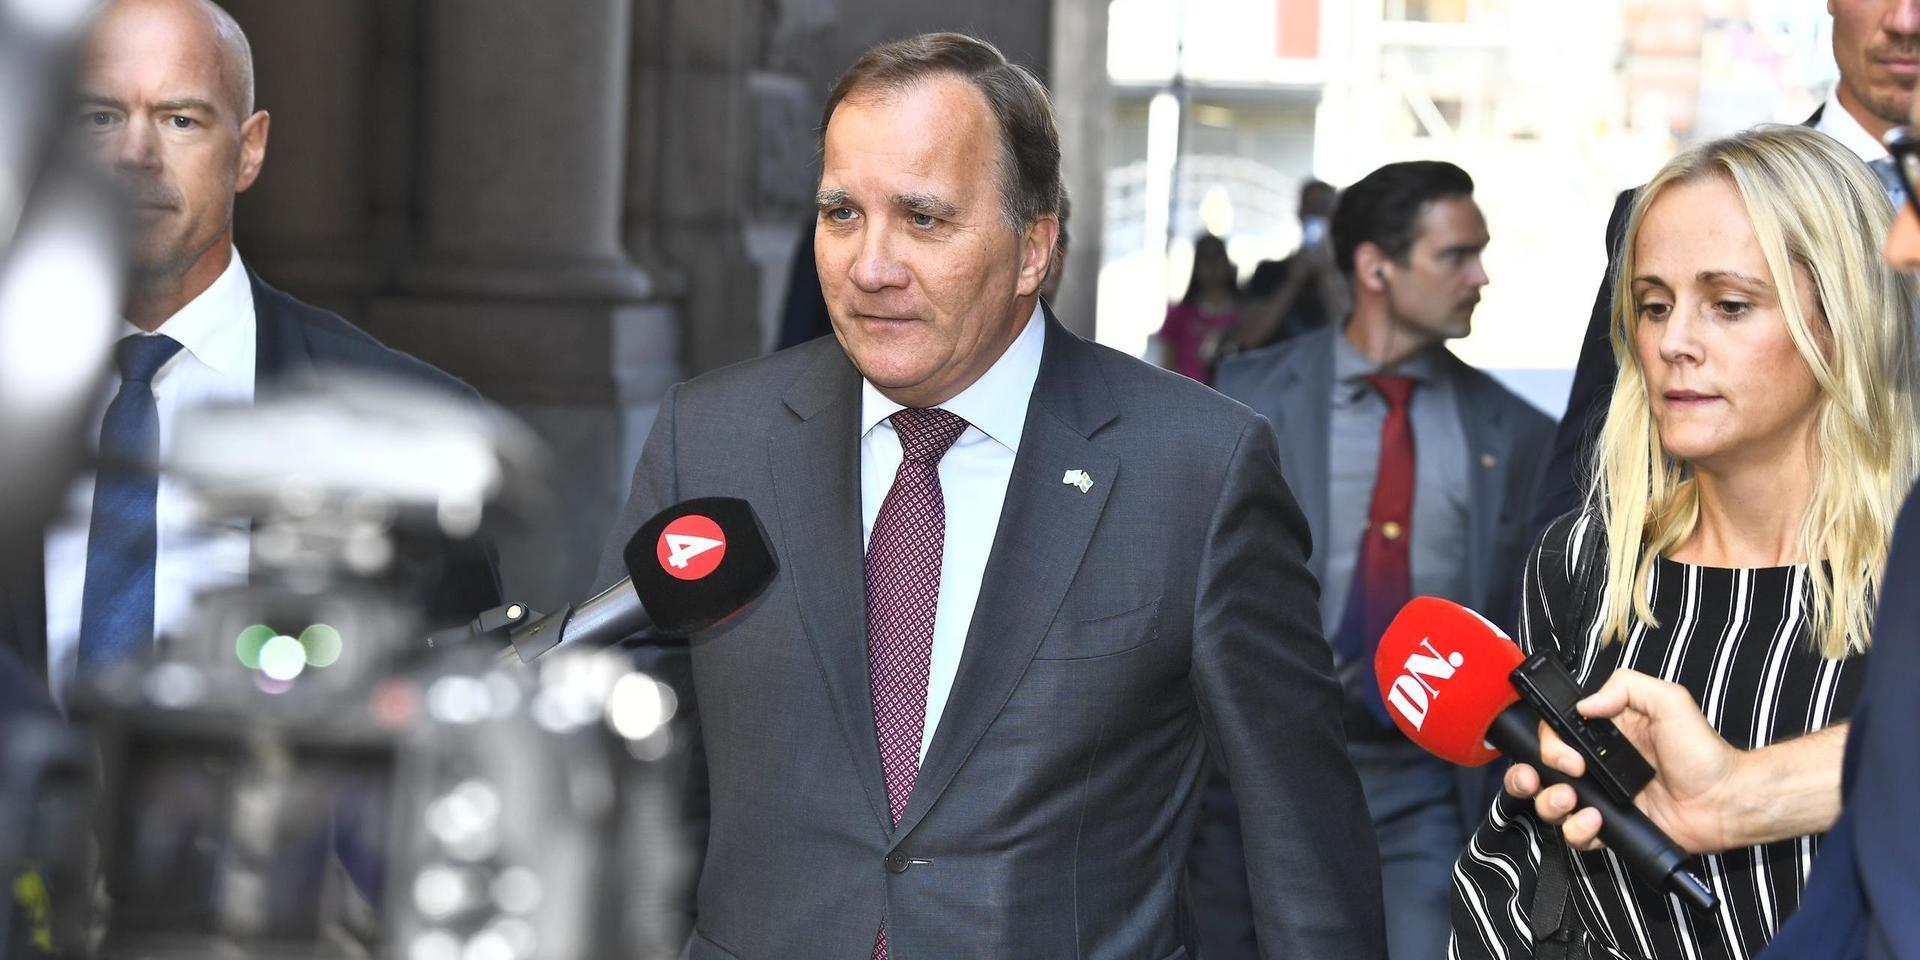 Statsminister Stefan Löfven (S) på väg mot riksdagshuset och den dagens talmansrundor.